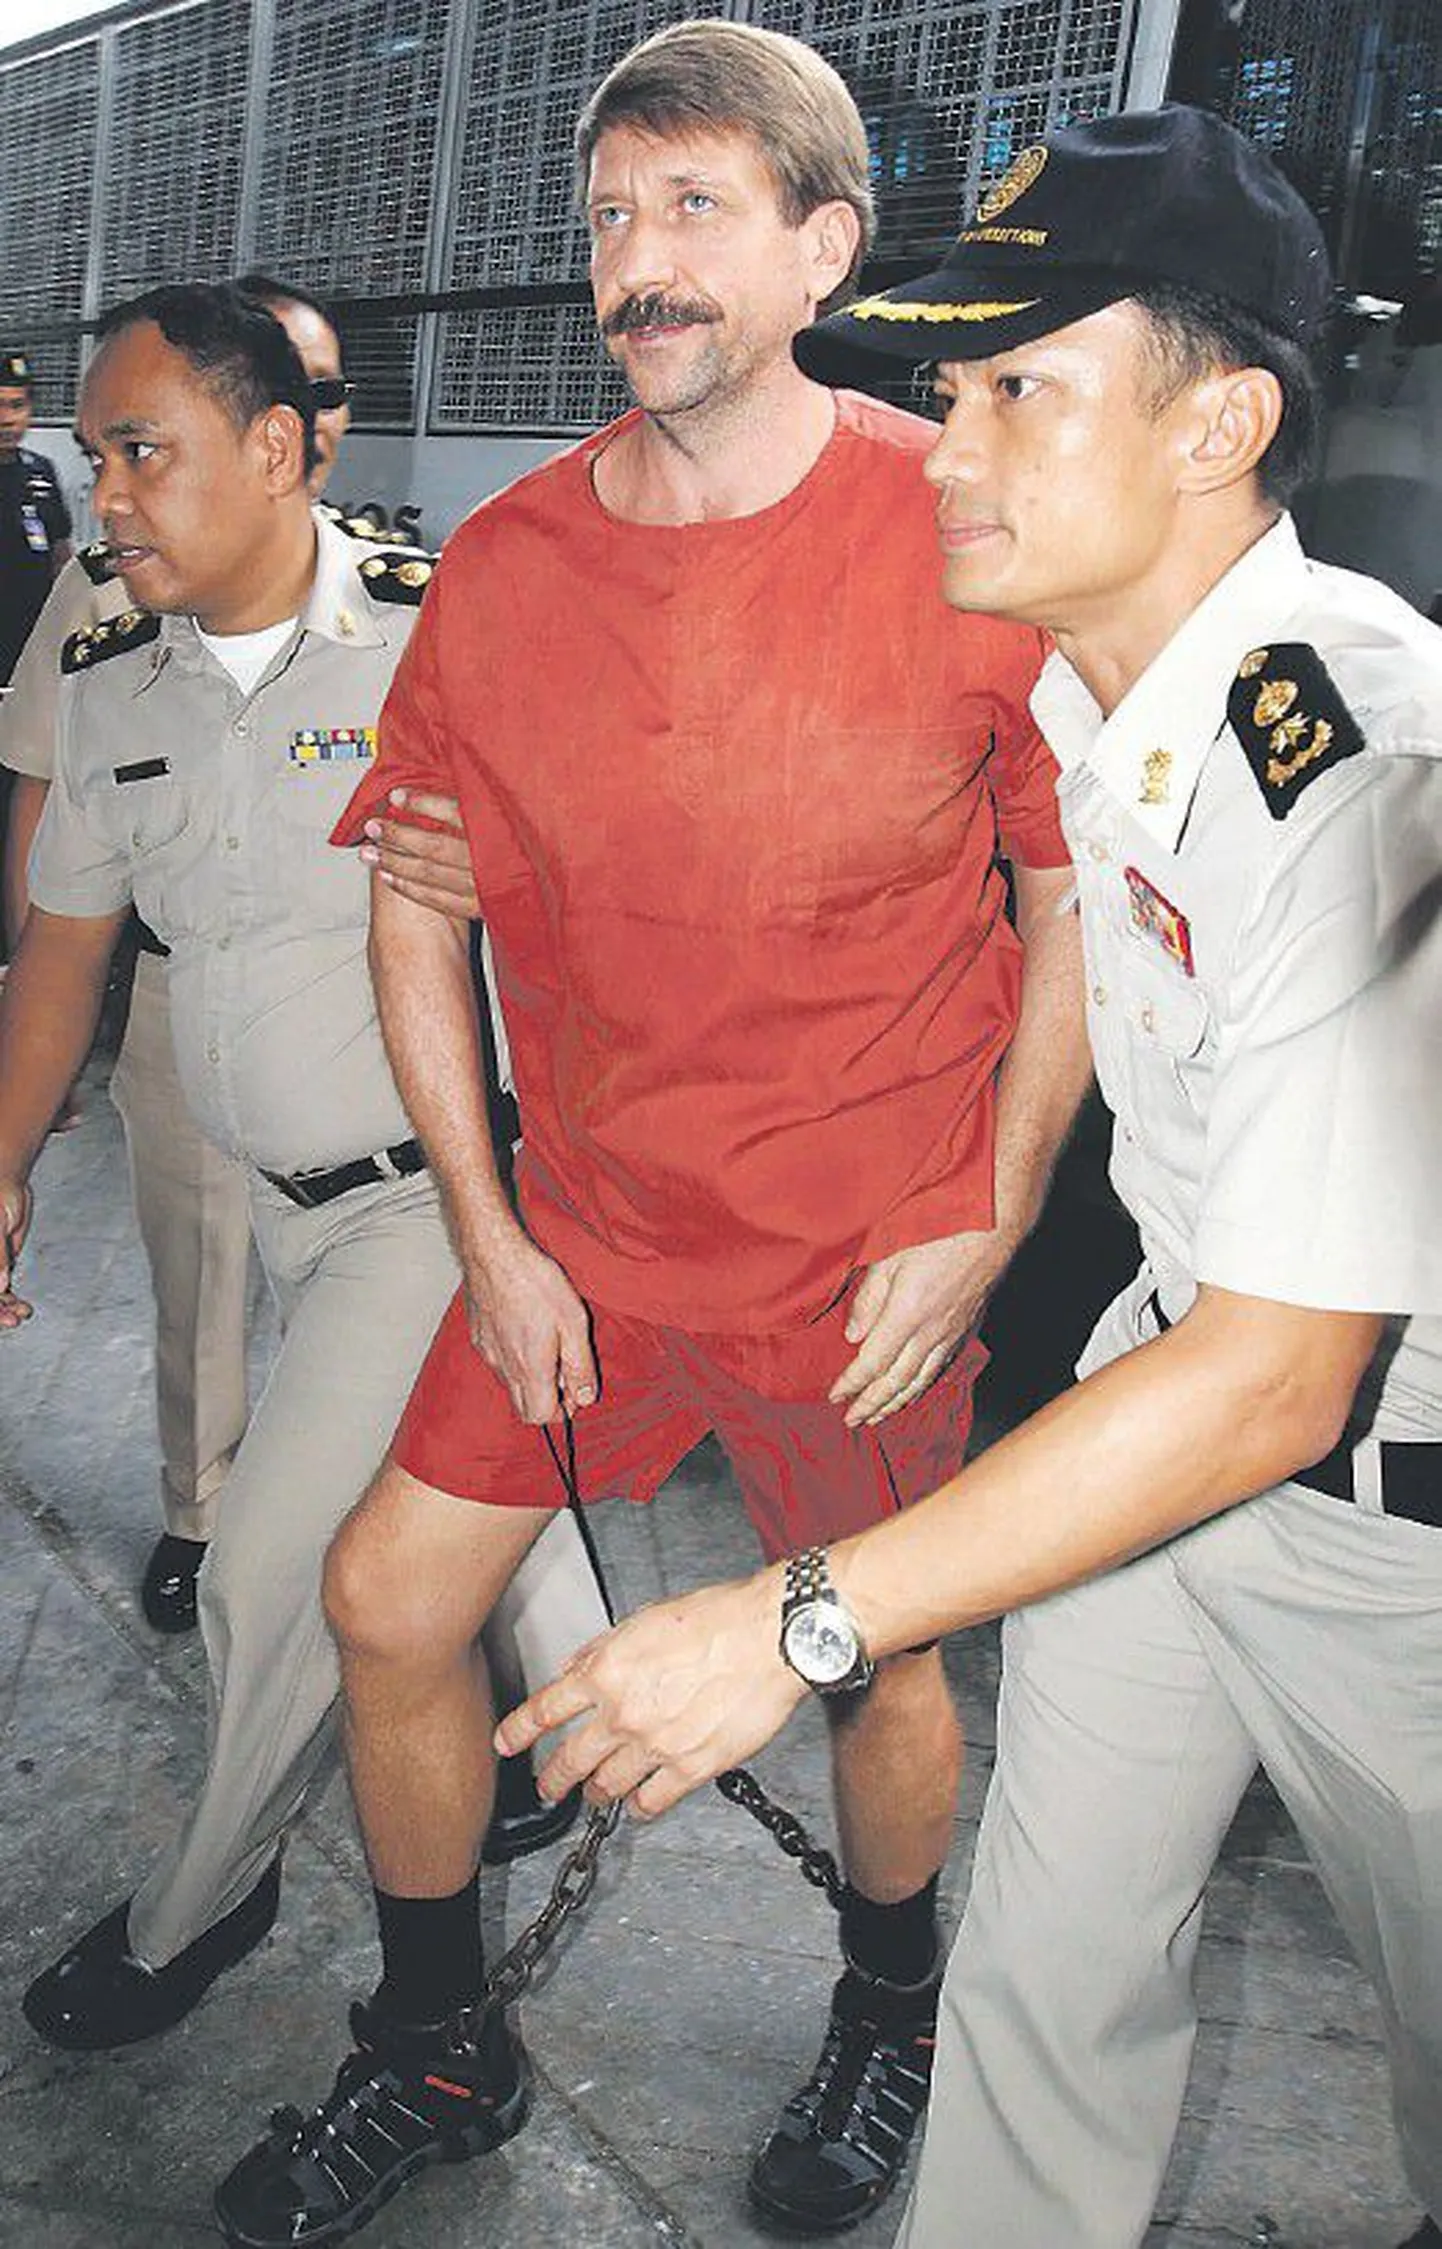 Российский бизнесмен Виктор Бут, подозреваемый в торговле оружием, направляется в зал суда (Таиланд).